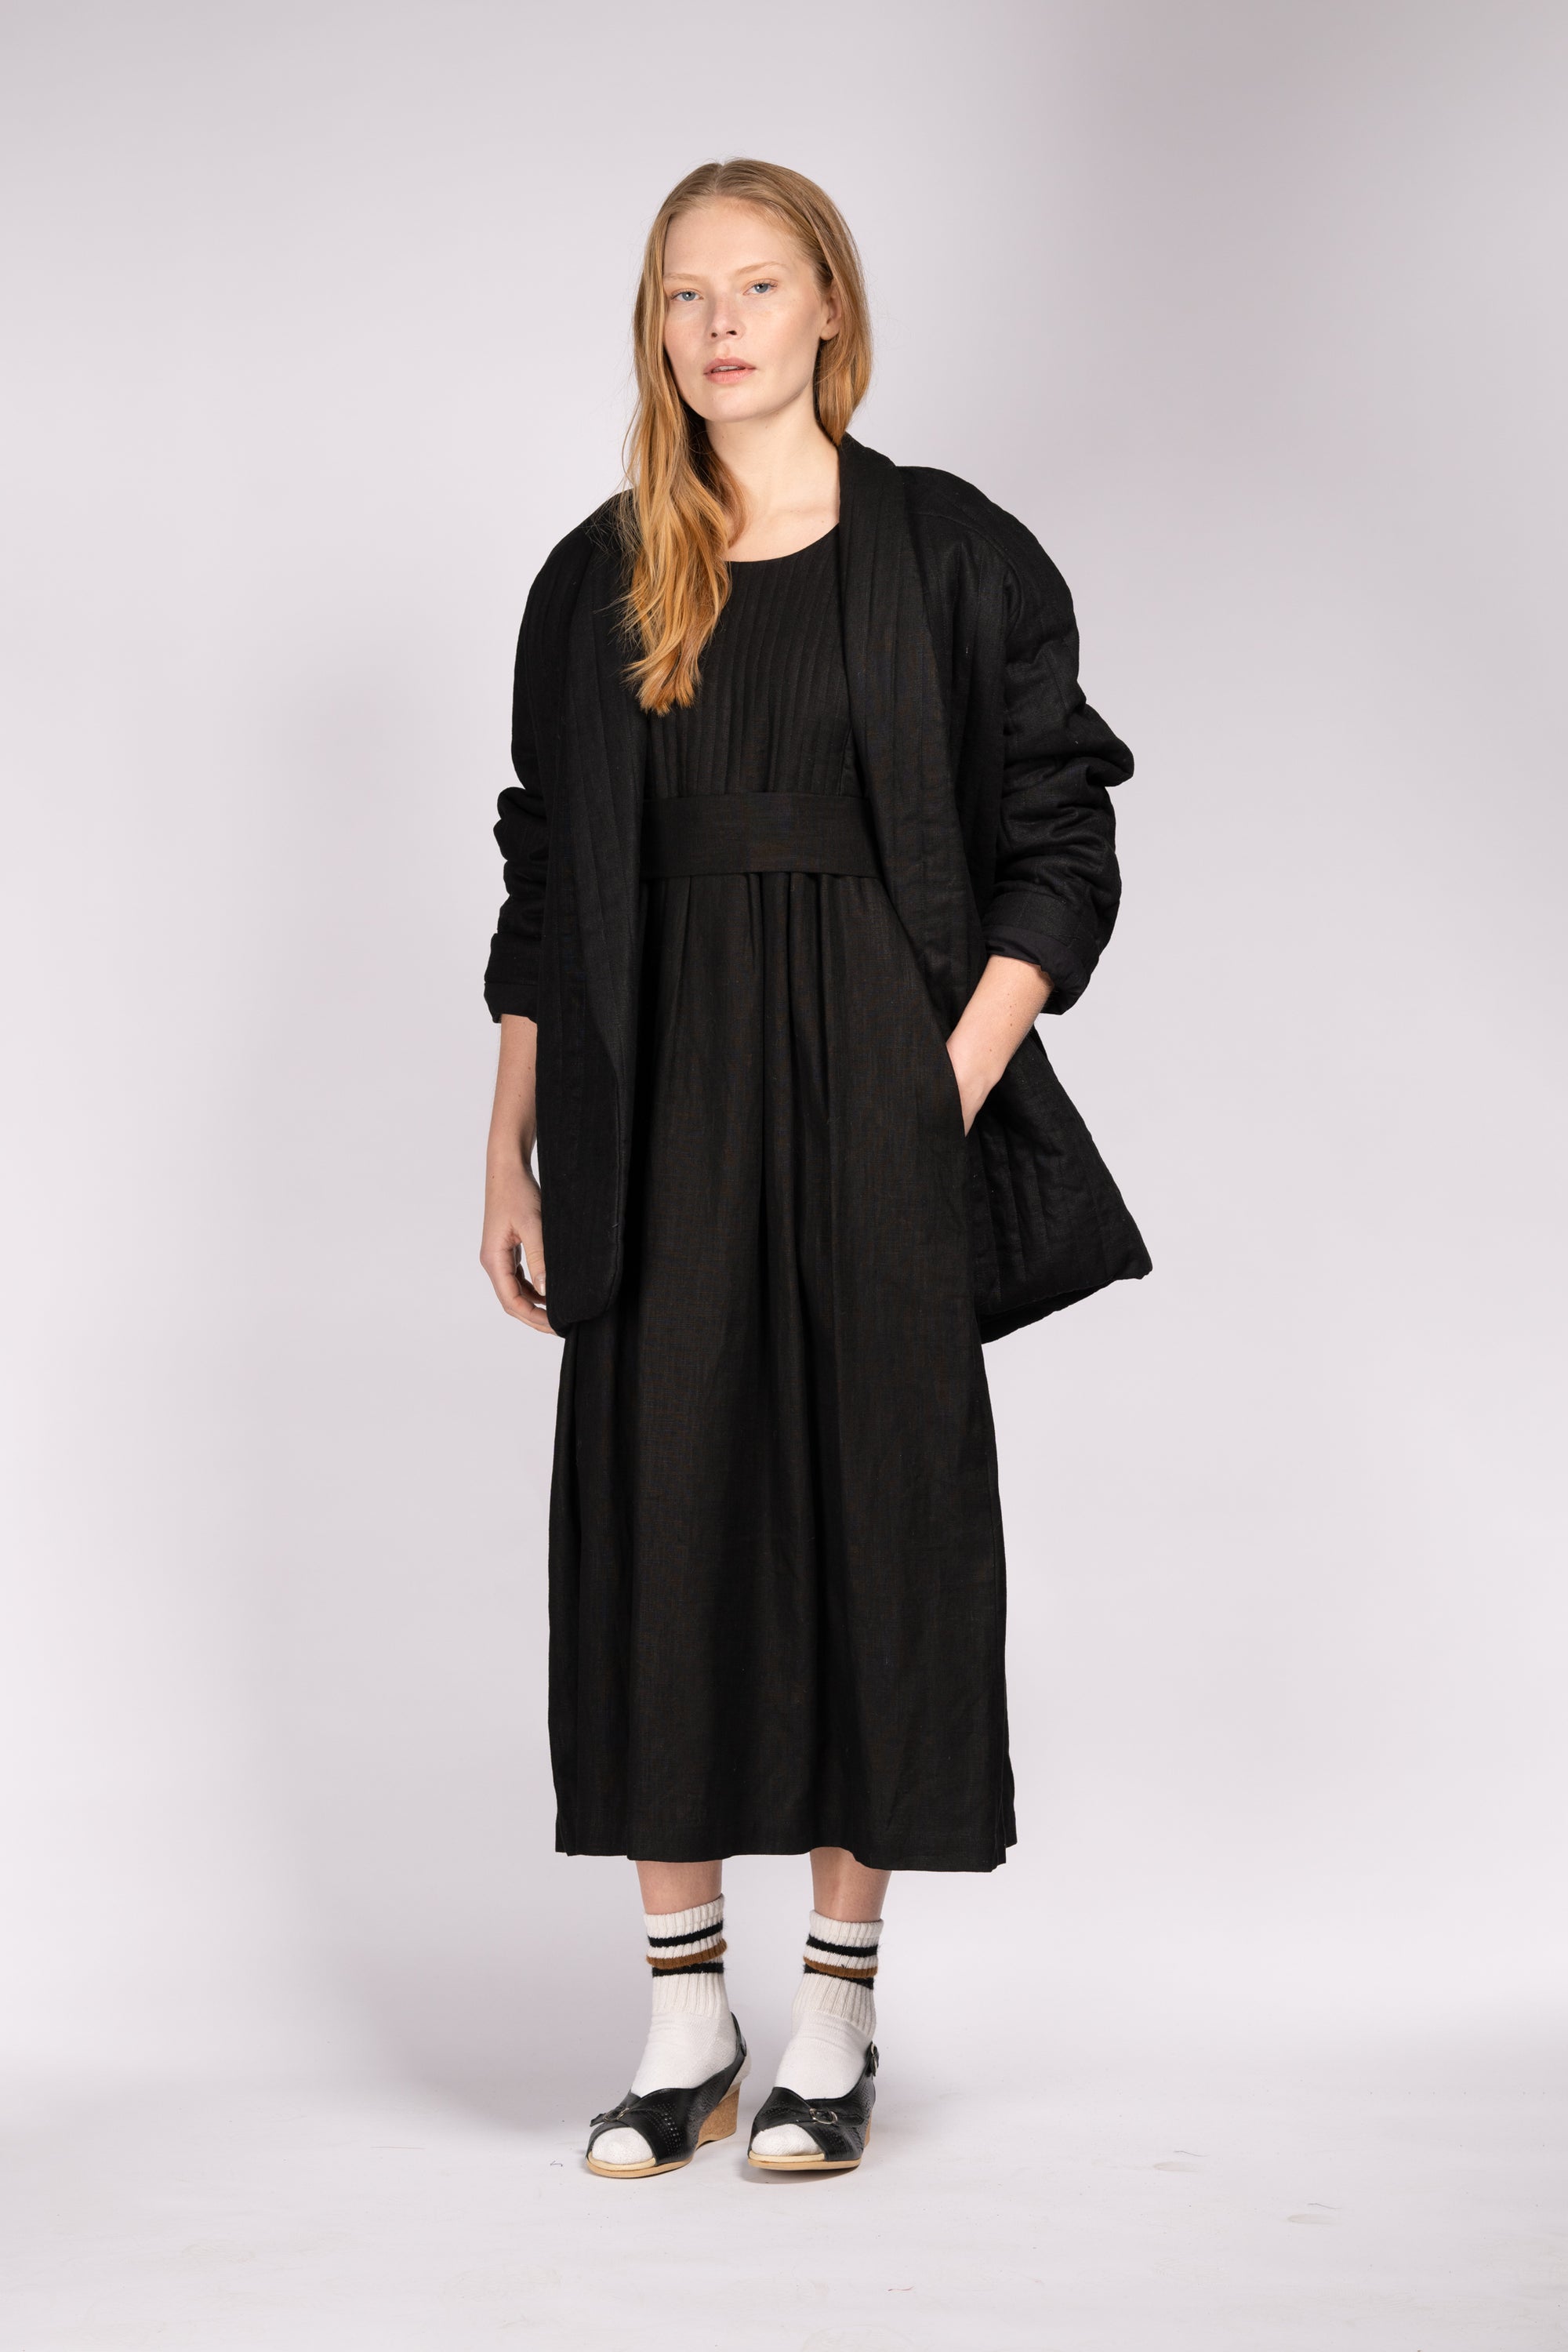 Quilt Dress - Black Linen